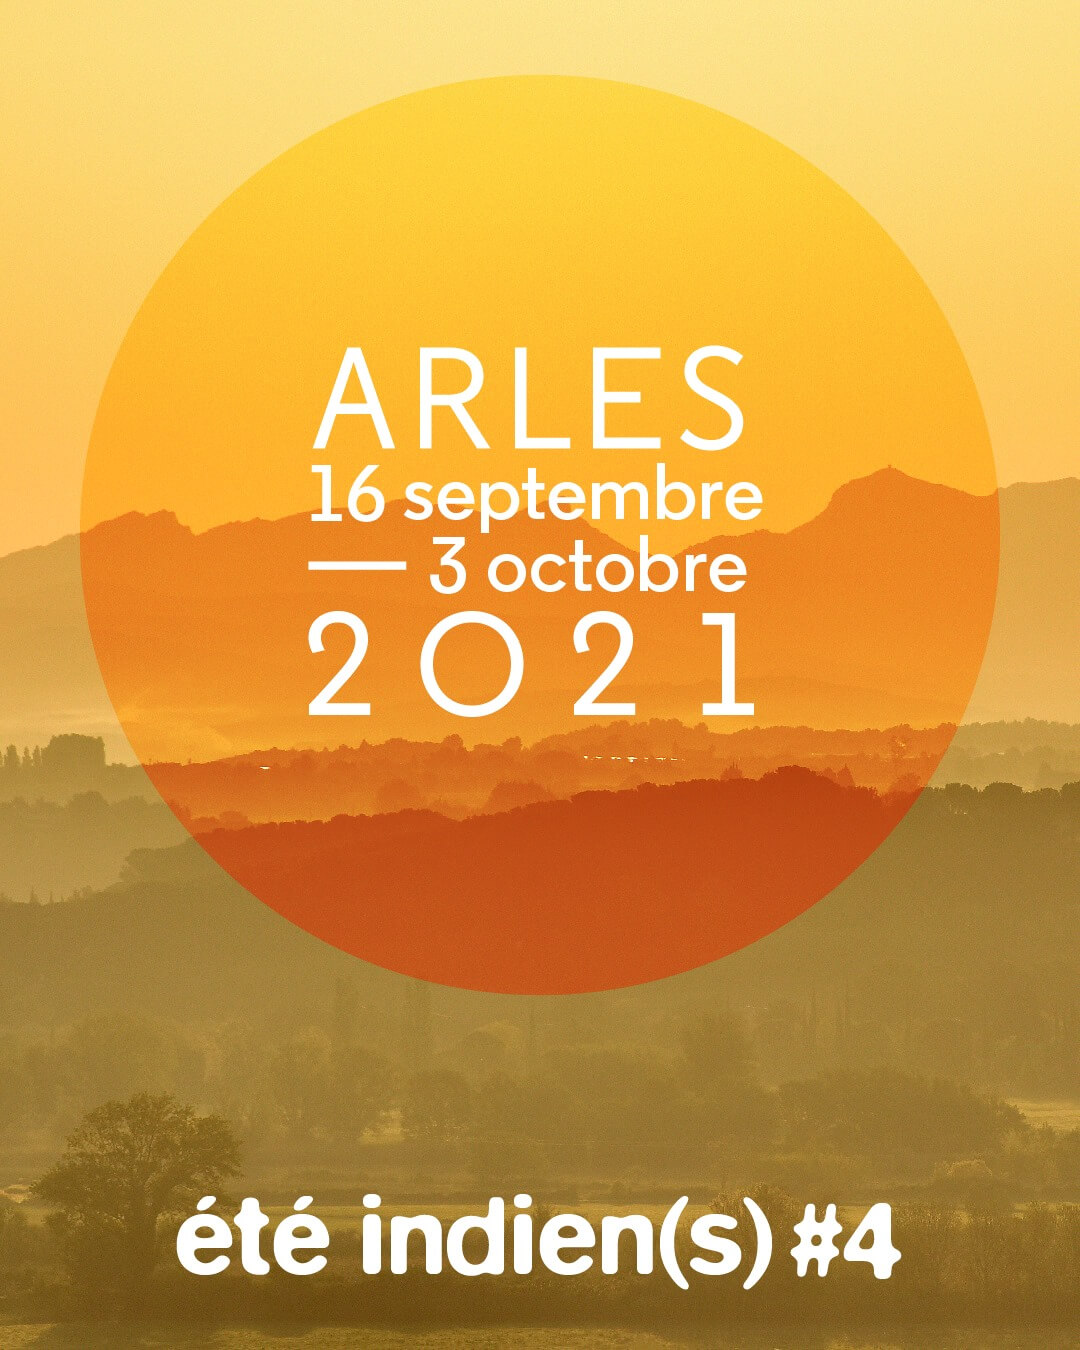 plan Eté Indien(s) 2019 à Arles